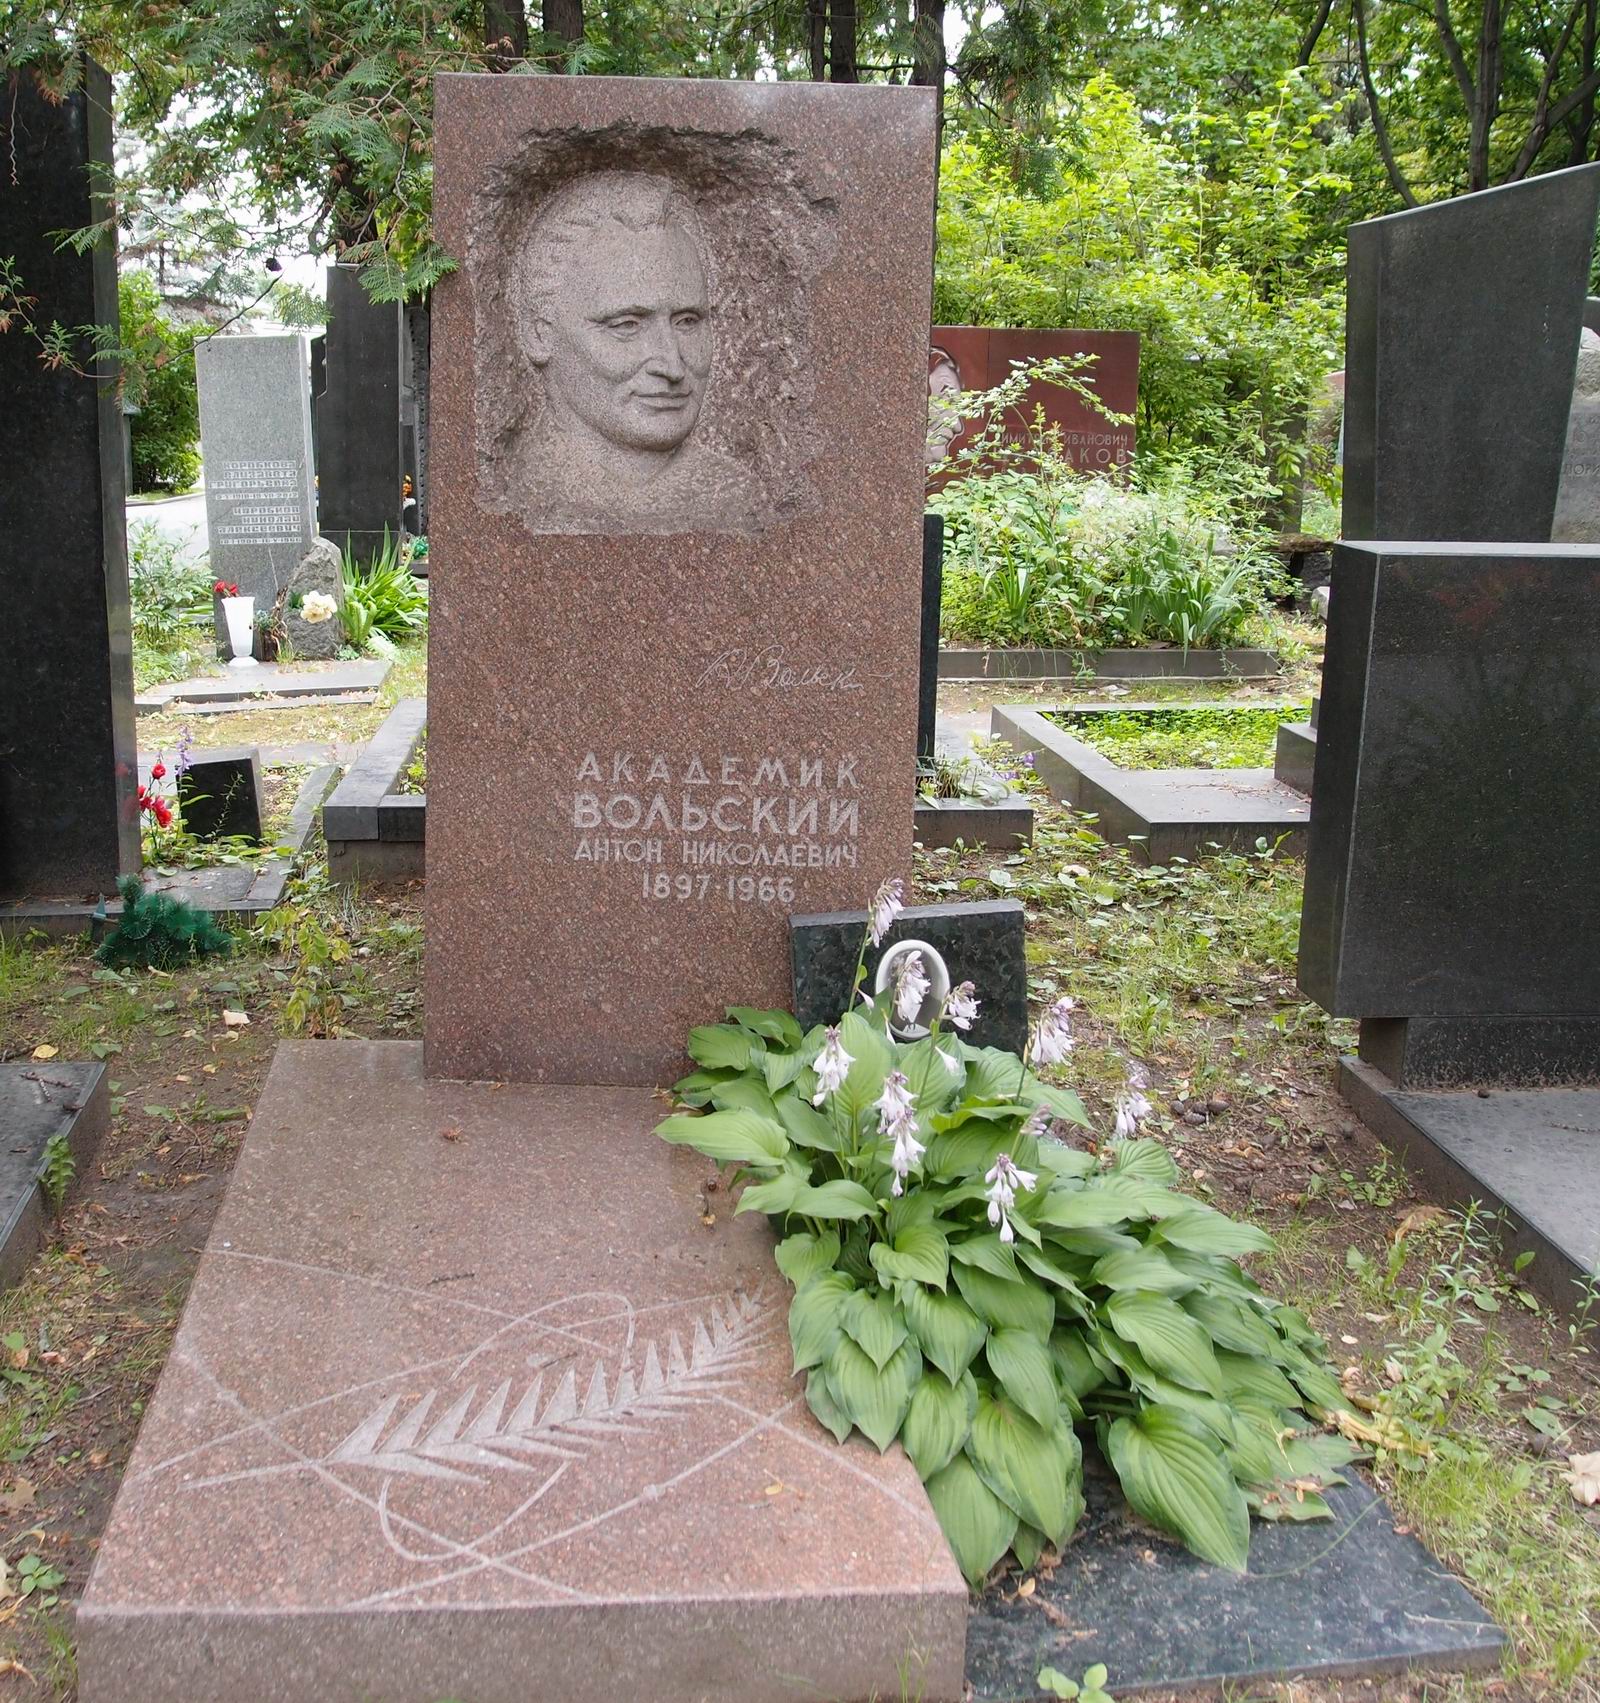 Памятник на могиле Вольского А.Н. (1897-1966), ск. И.Тенета, арх. А.Усачёв, на Новодевичьем кладбище (6-29-12).